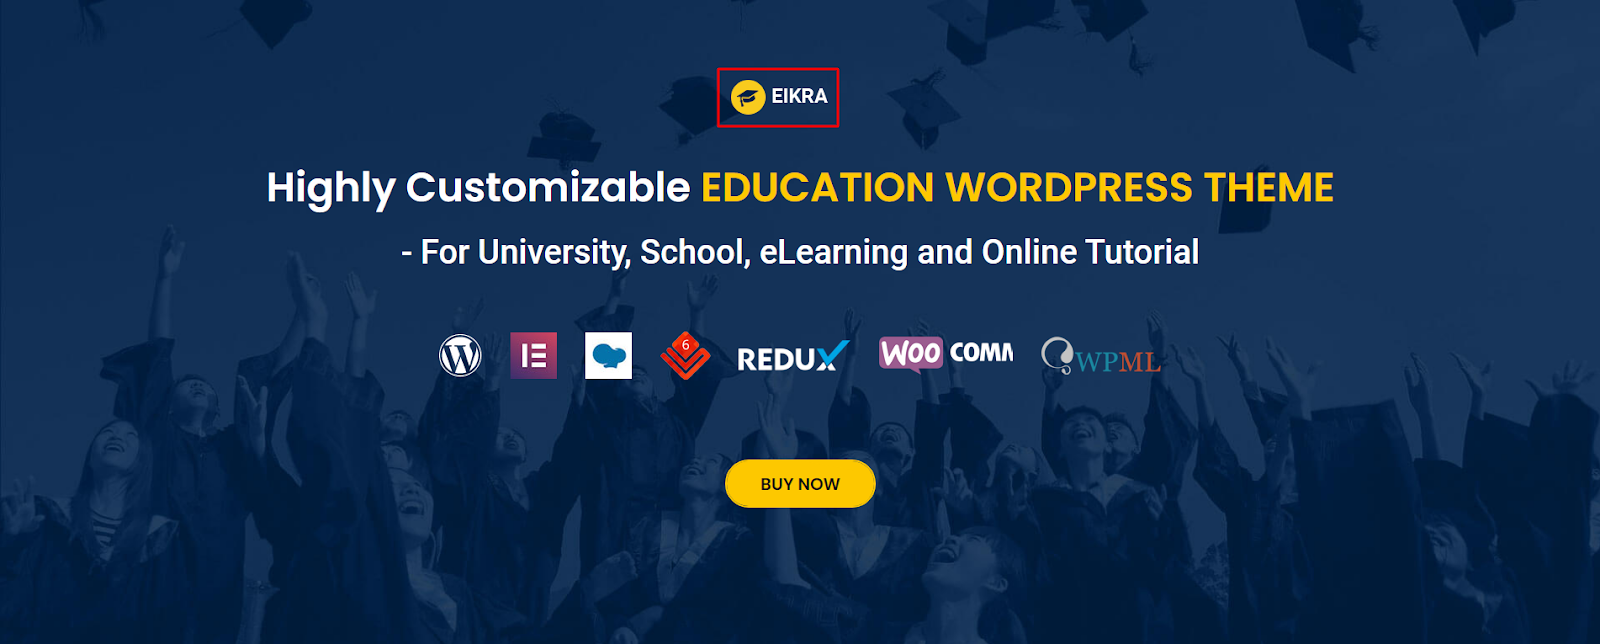 Eikra- WordPress Education Theme 